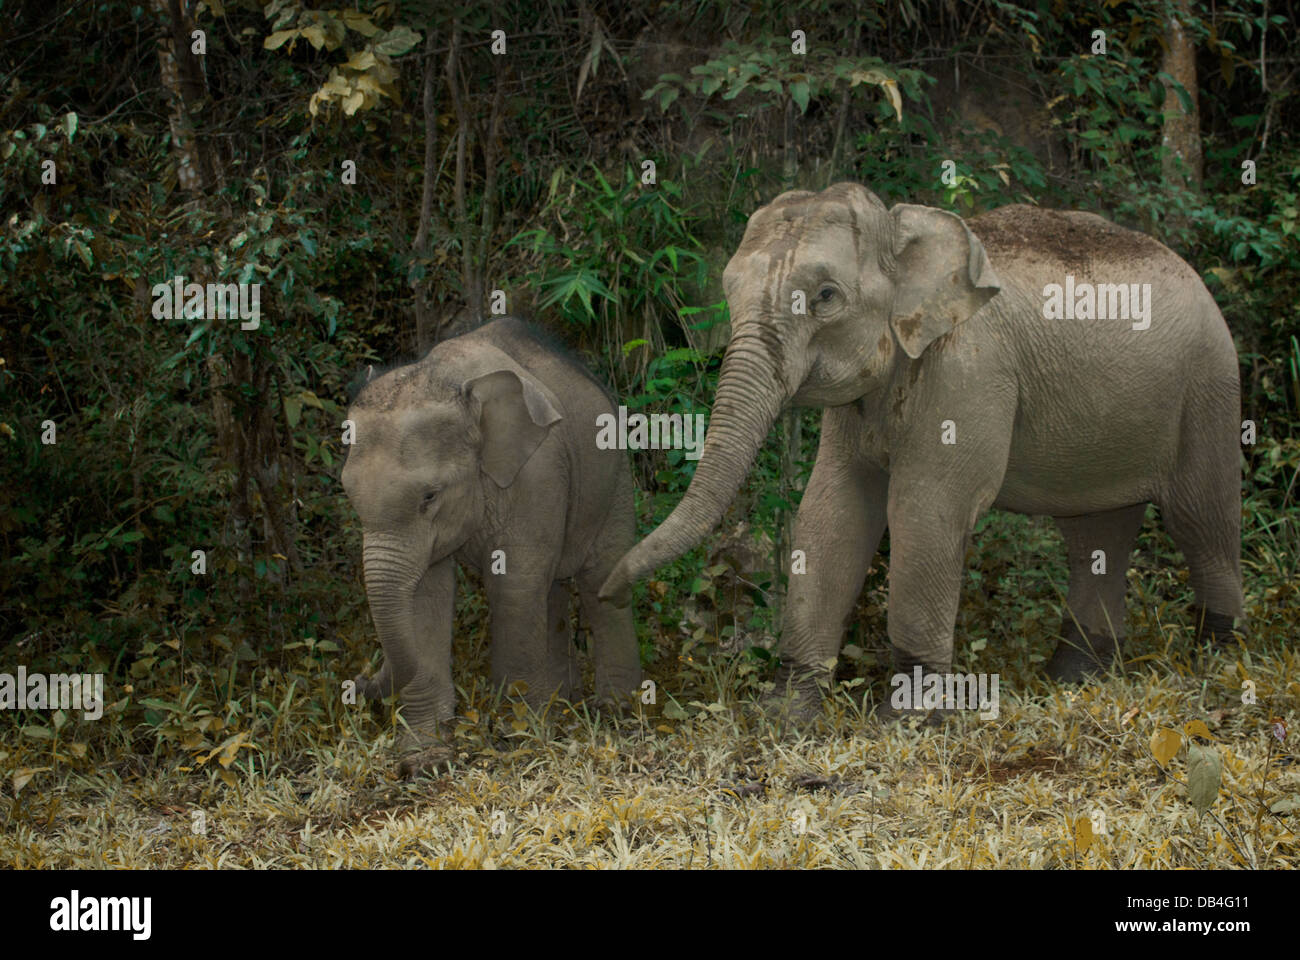 A rischio di estinzione o asiatico Elefante asiatico (Elephas maximus) è l'unica specie vivente del genere Elephas Foto Stock